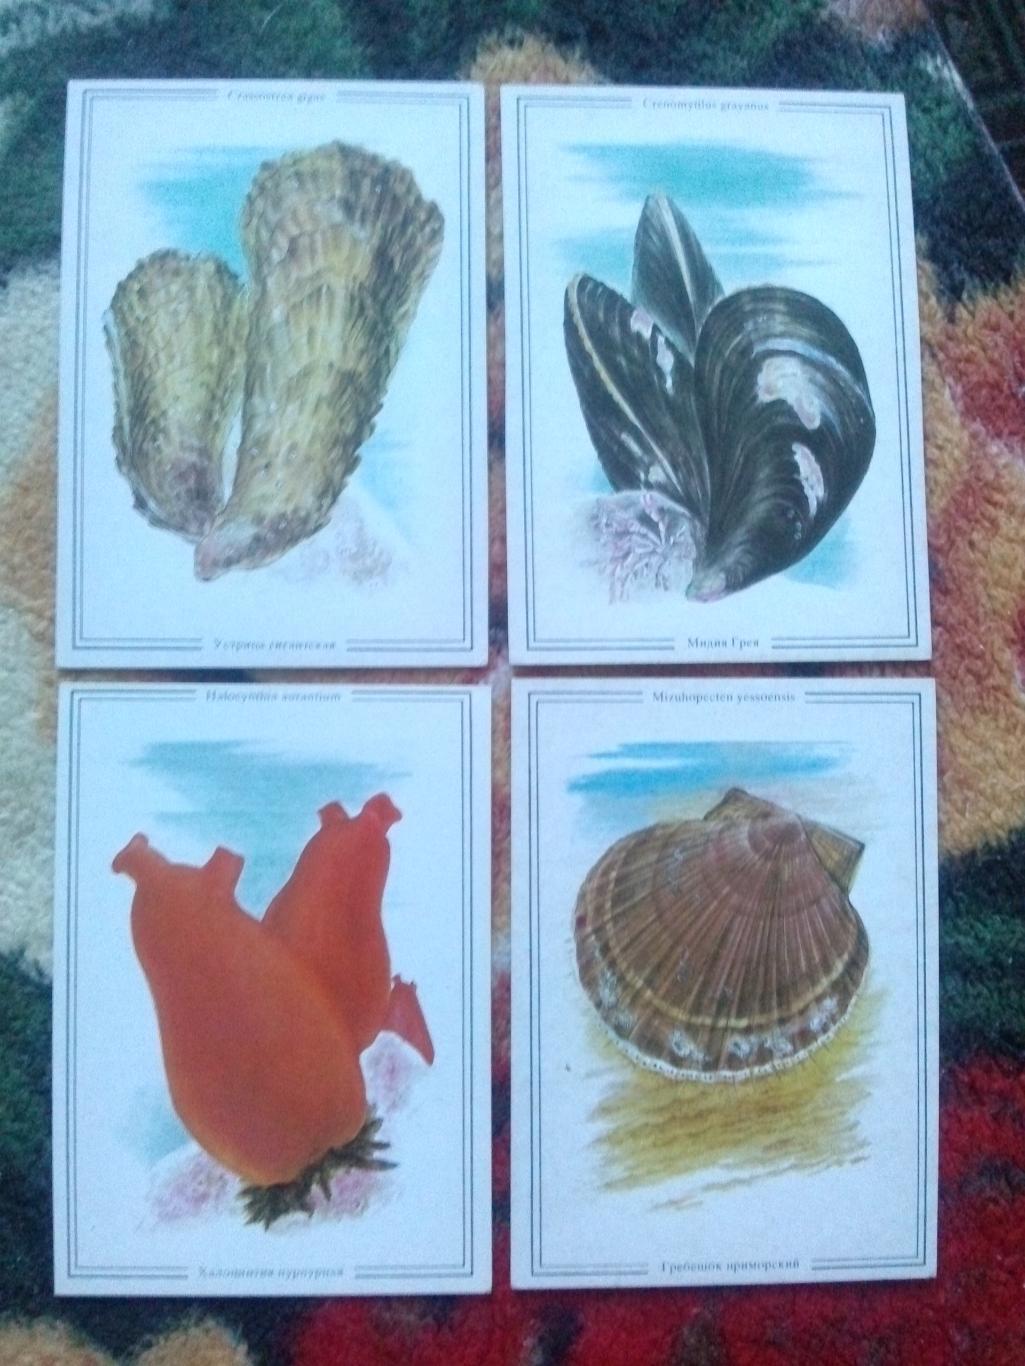 Жизнь моря (Дальний Восток) 1986 г. полный набор - 16 открыток (Рыба , моллюски) 5